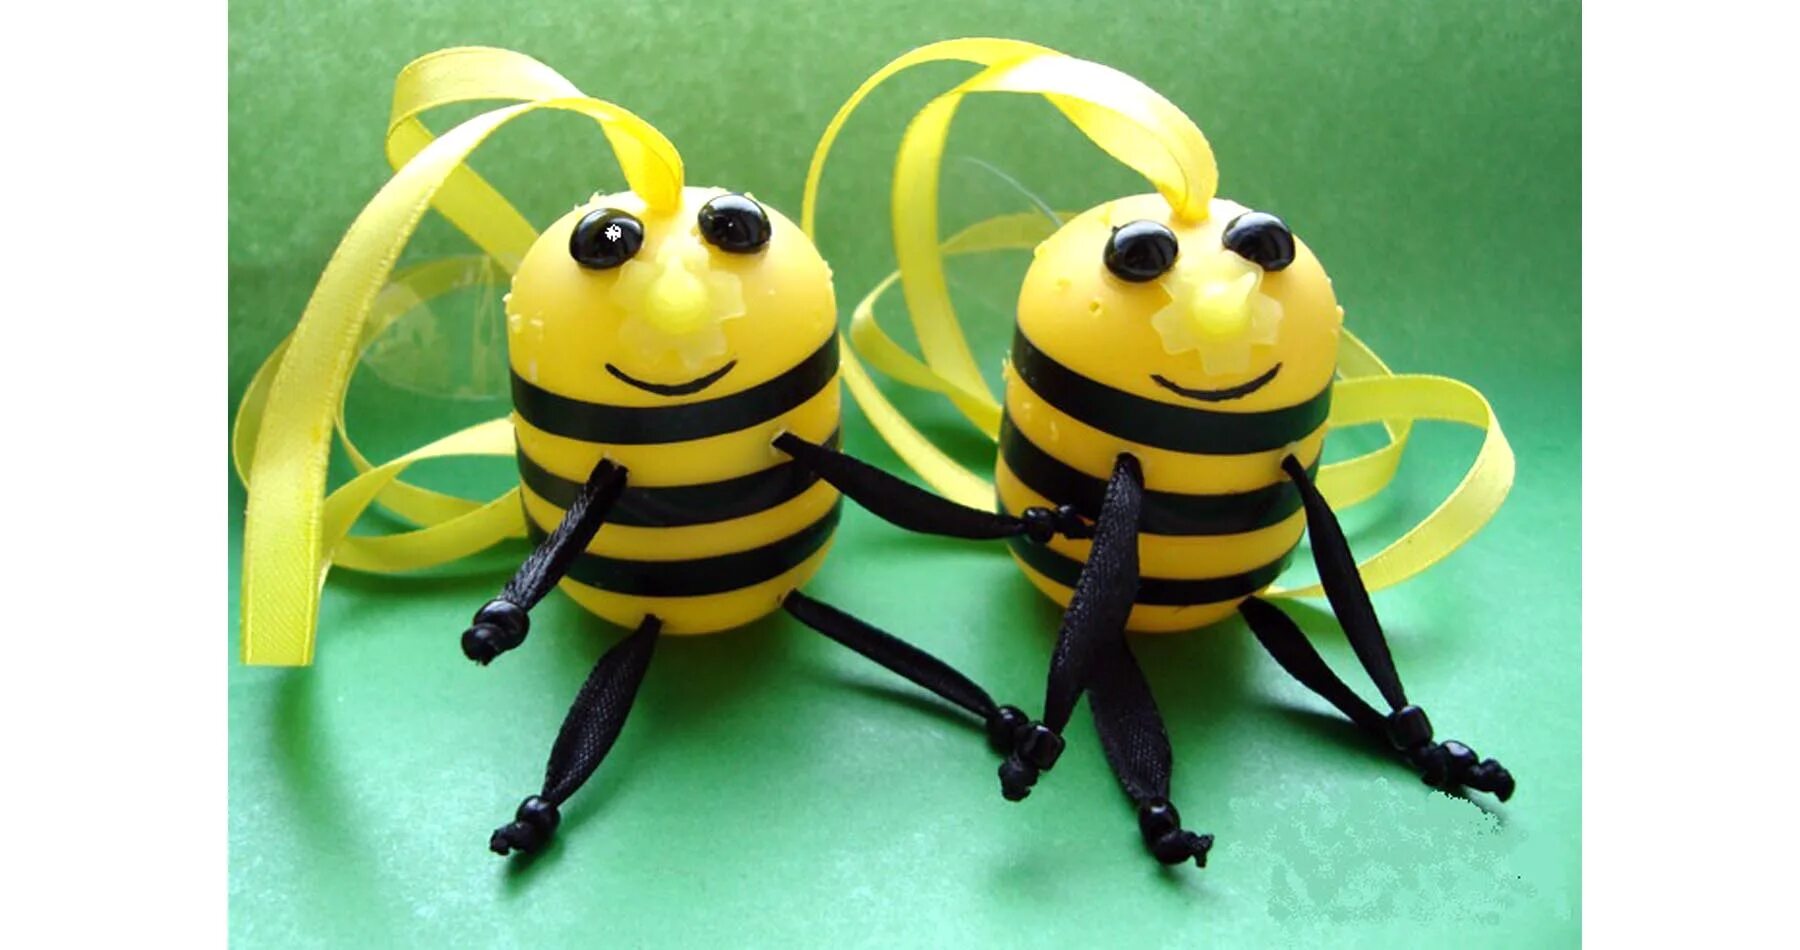 Сделать пчелу своими руками. Поделка пчёлка из киндера для детей. Пчелки из киндорных яиц. Поделка пчелки из киндера. Поделка пчела из киндера.